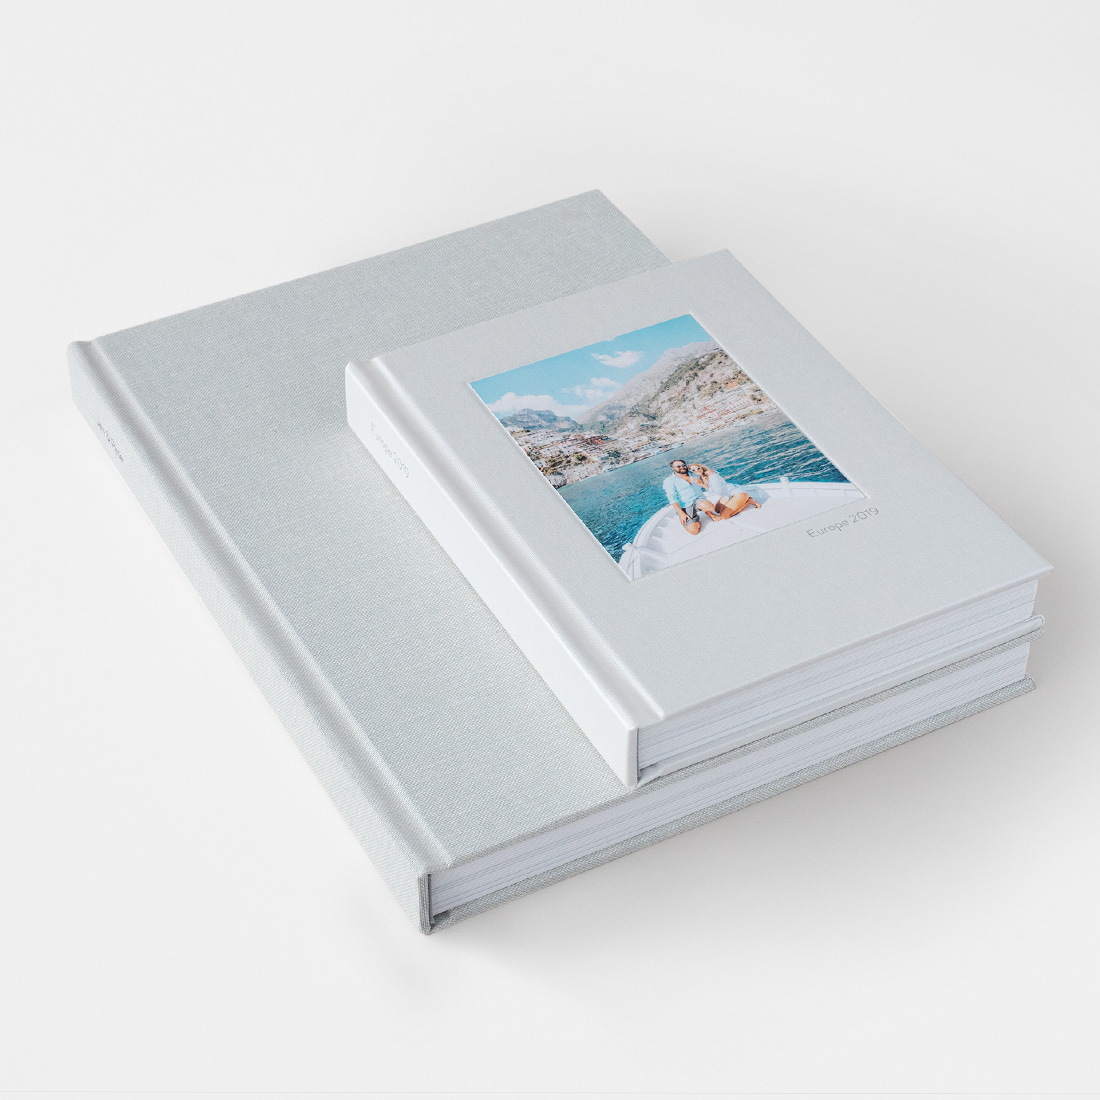 Buy La Lente Premium Photo Album, Large Customizable, 50 pages/100